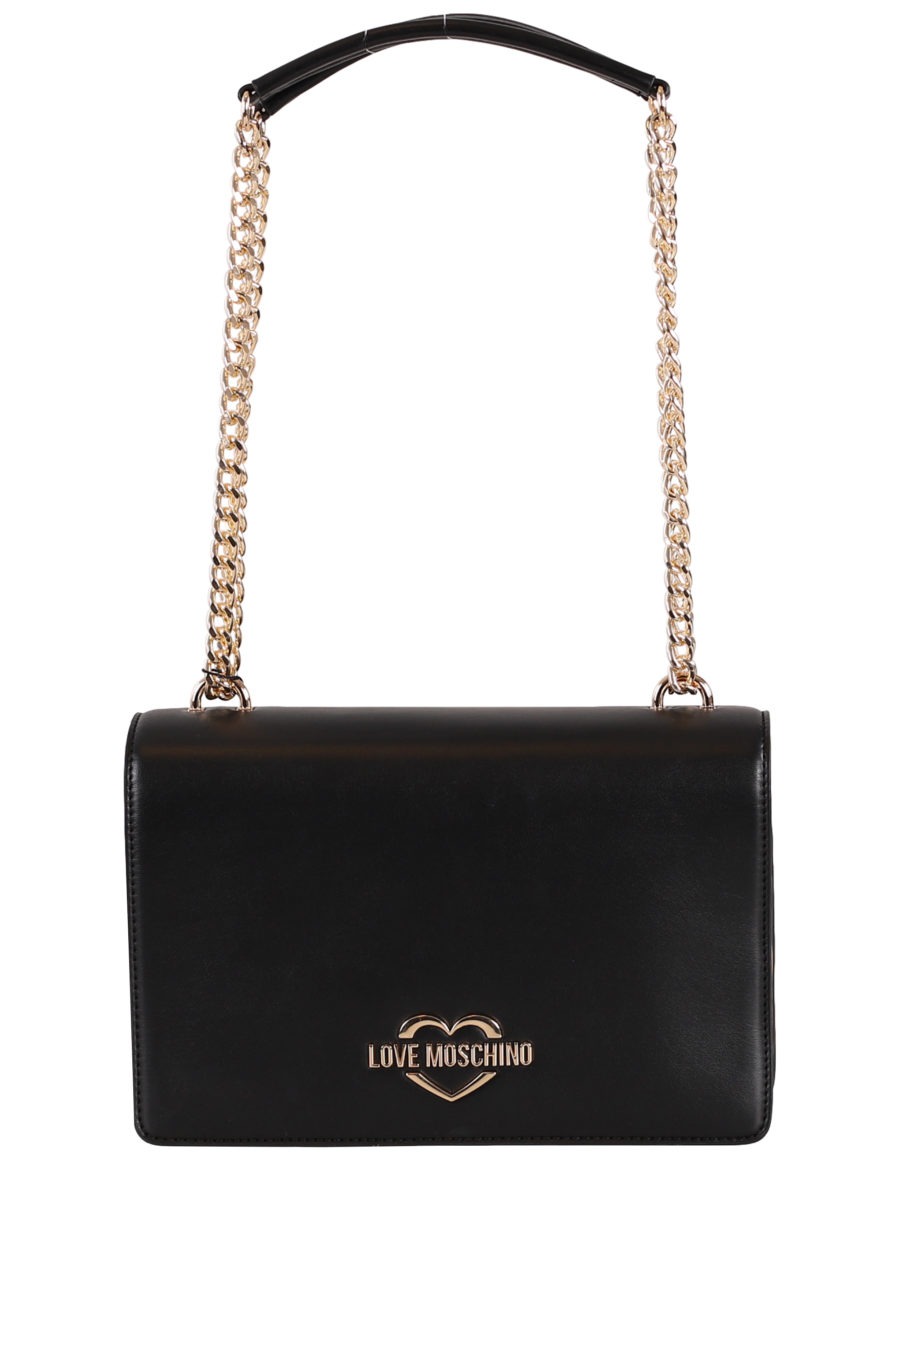 Black shoulder bag with gold logo - IMG 0338